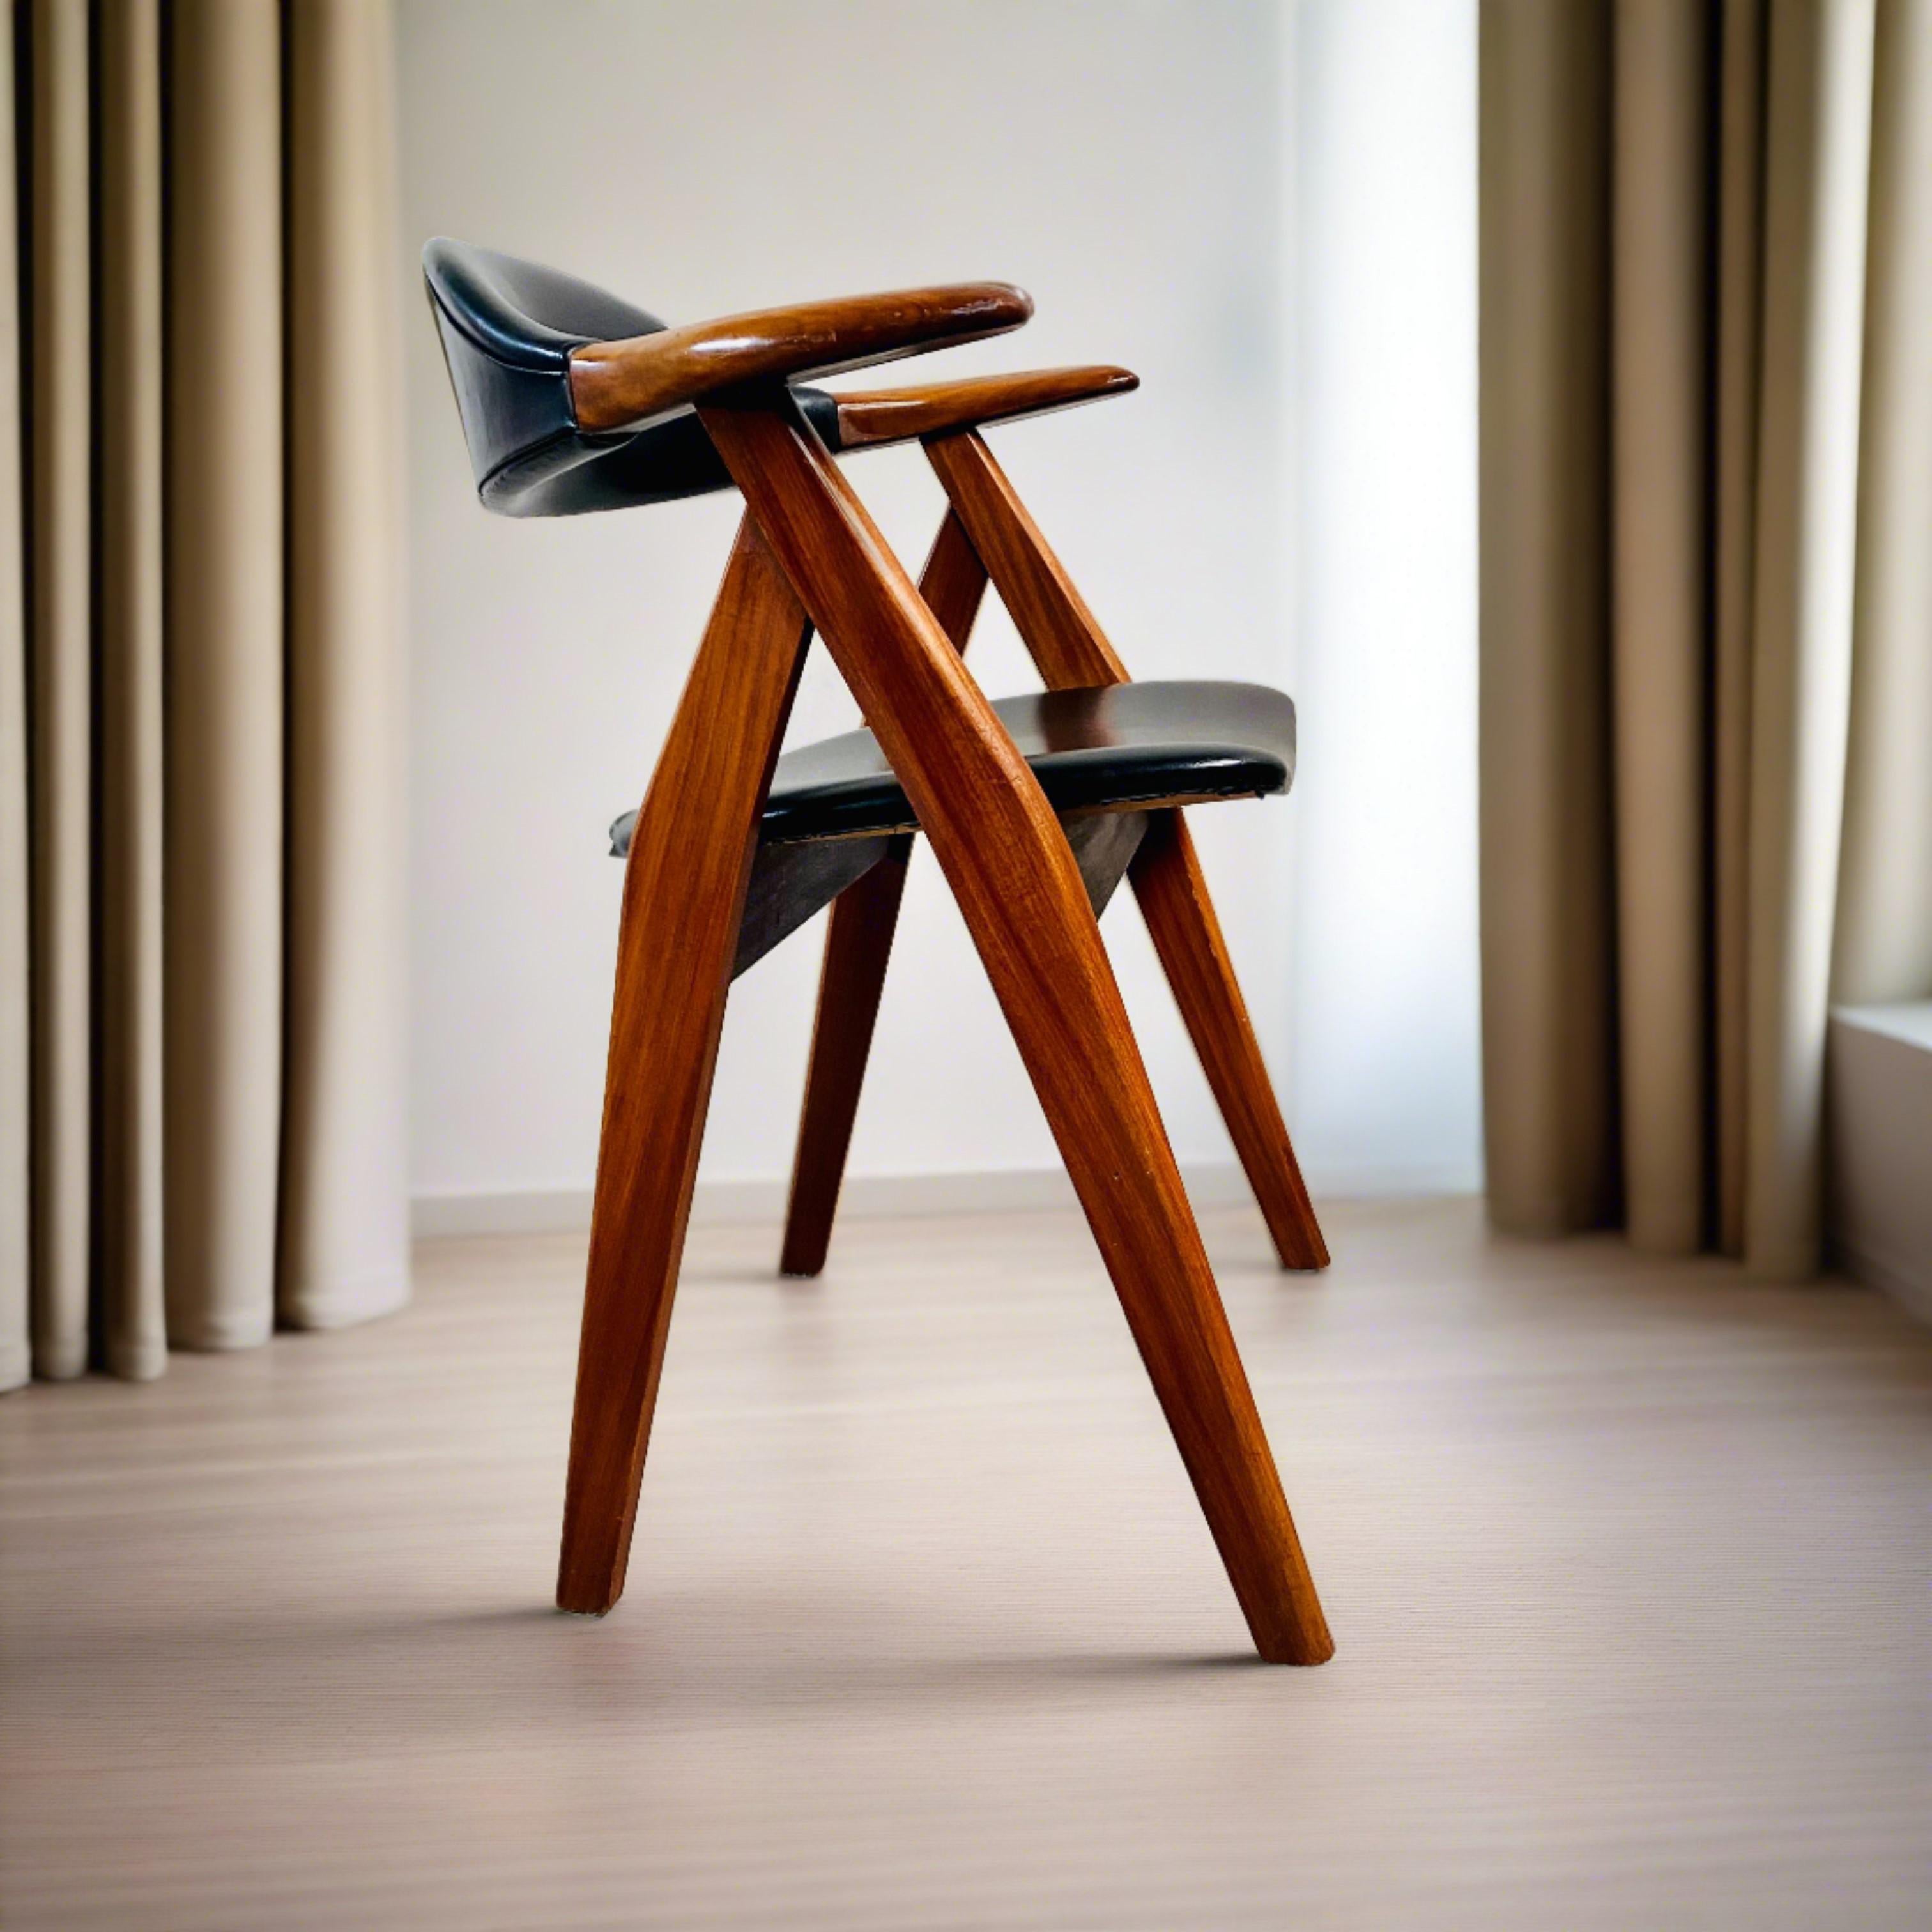 Wir stellen den Cow Horn Chair von Tijsseling Meubelfabriek vor, ein zeitloses Meisterwerk, das 1960 in den Niederlanden entstand. Dieser mit Präzision gefertigte, kultige Stuhl verbindet Eleganz und Komfort nahtlos miteinander. Die elegante